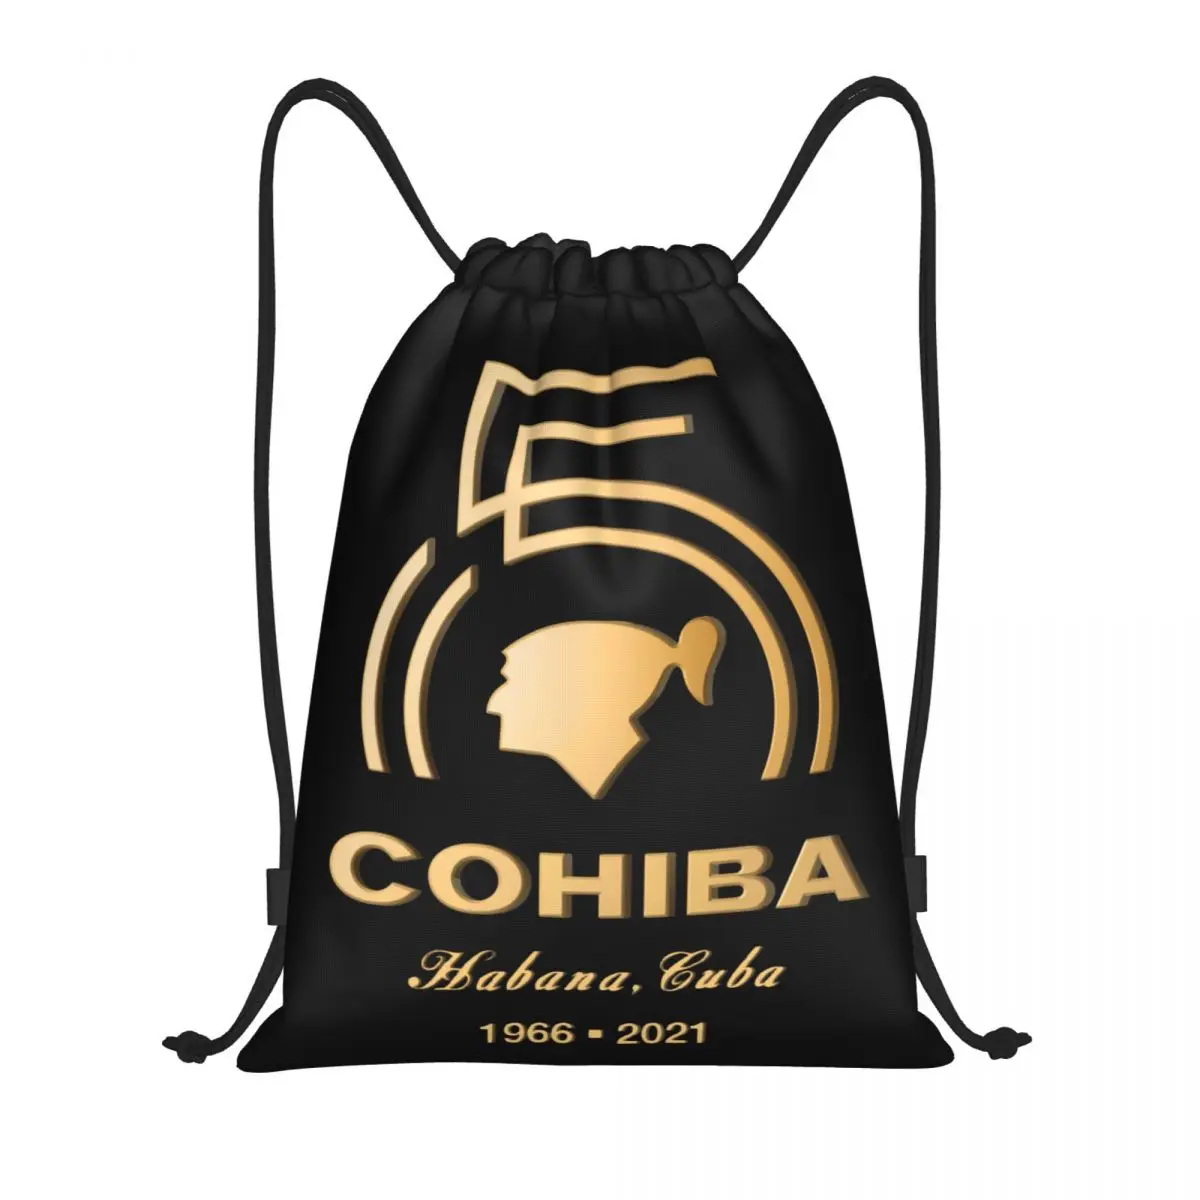 Cuban Cohiba Cigars Рюкзак на шнурке, спортивная сумка для мужчин и женщин, рюкзак для покупок